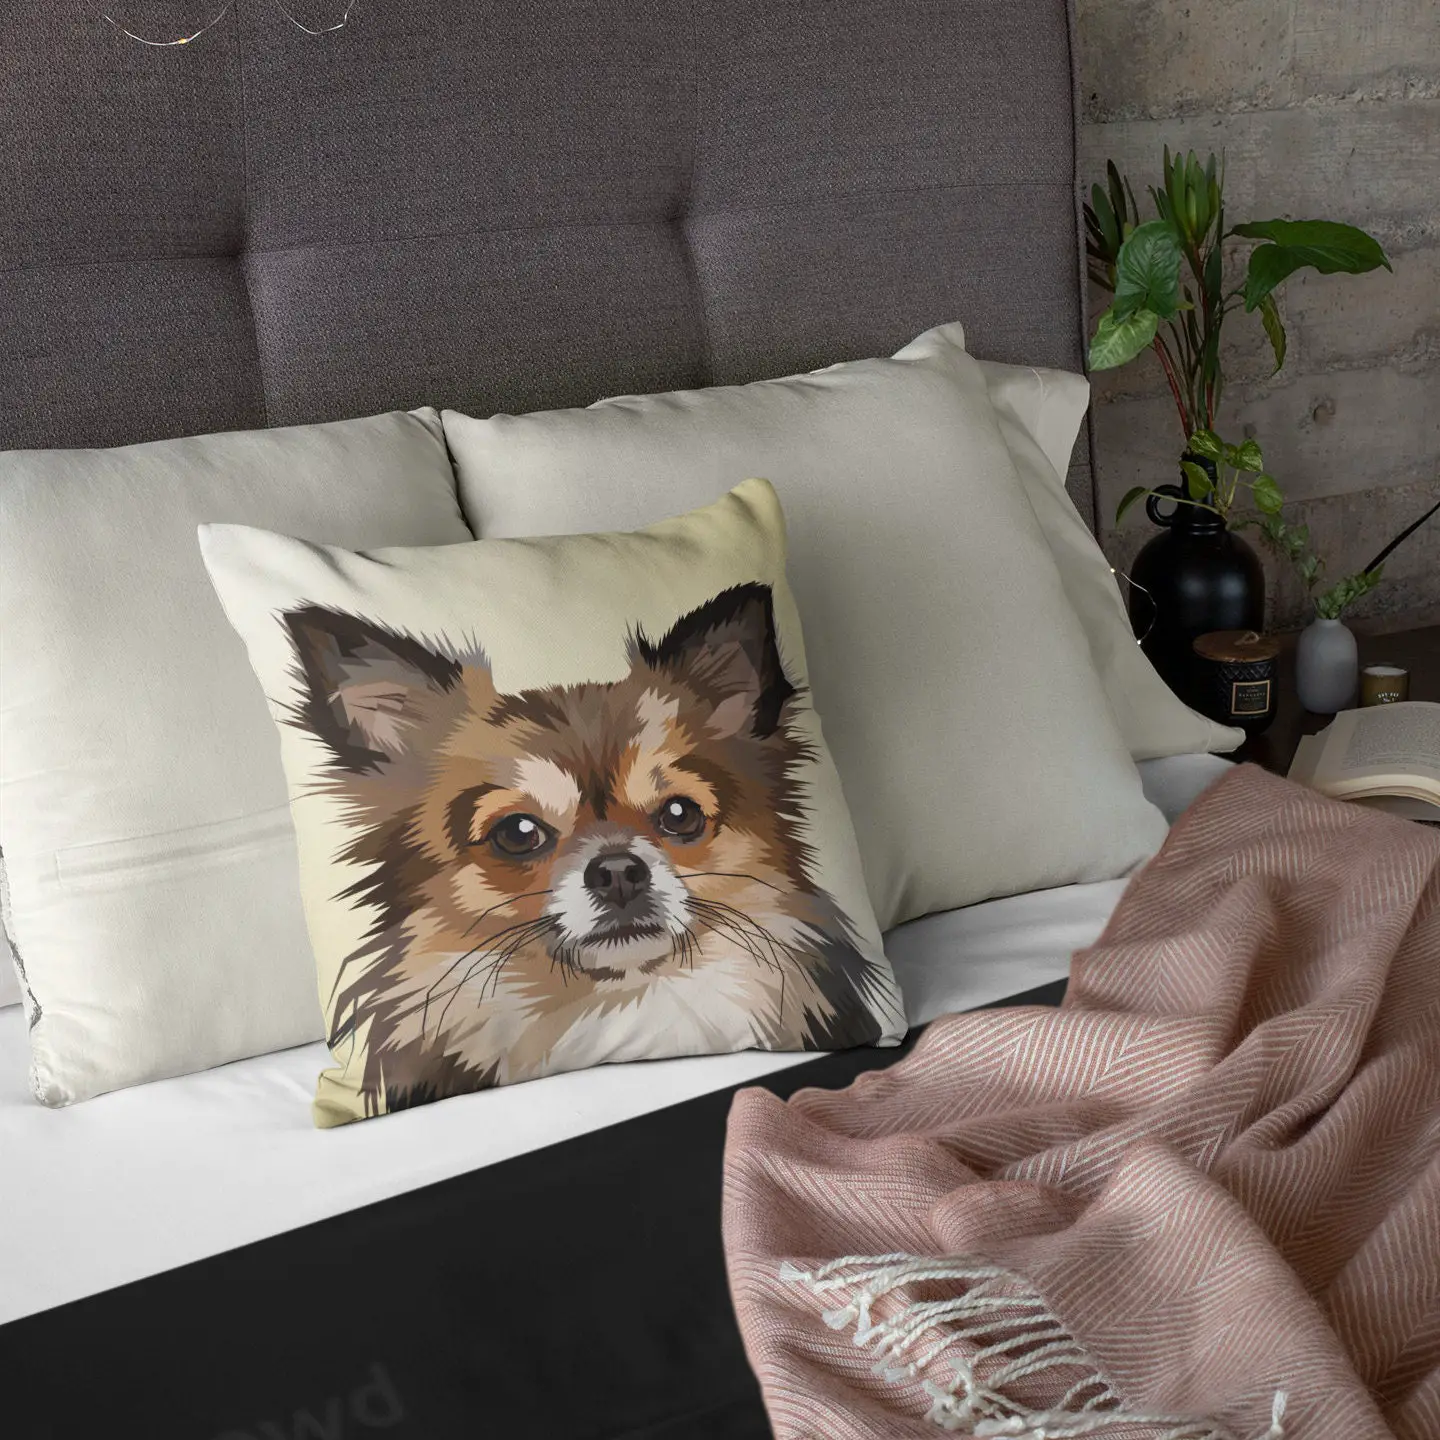 Cute Dog Face Pillow